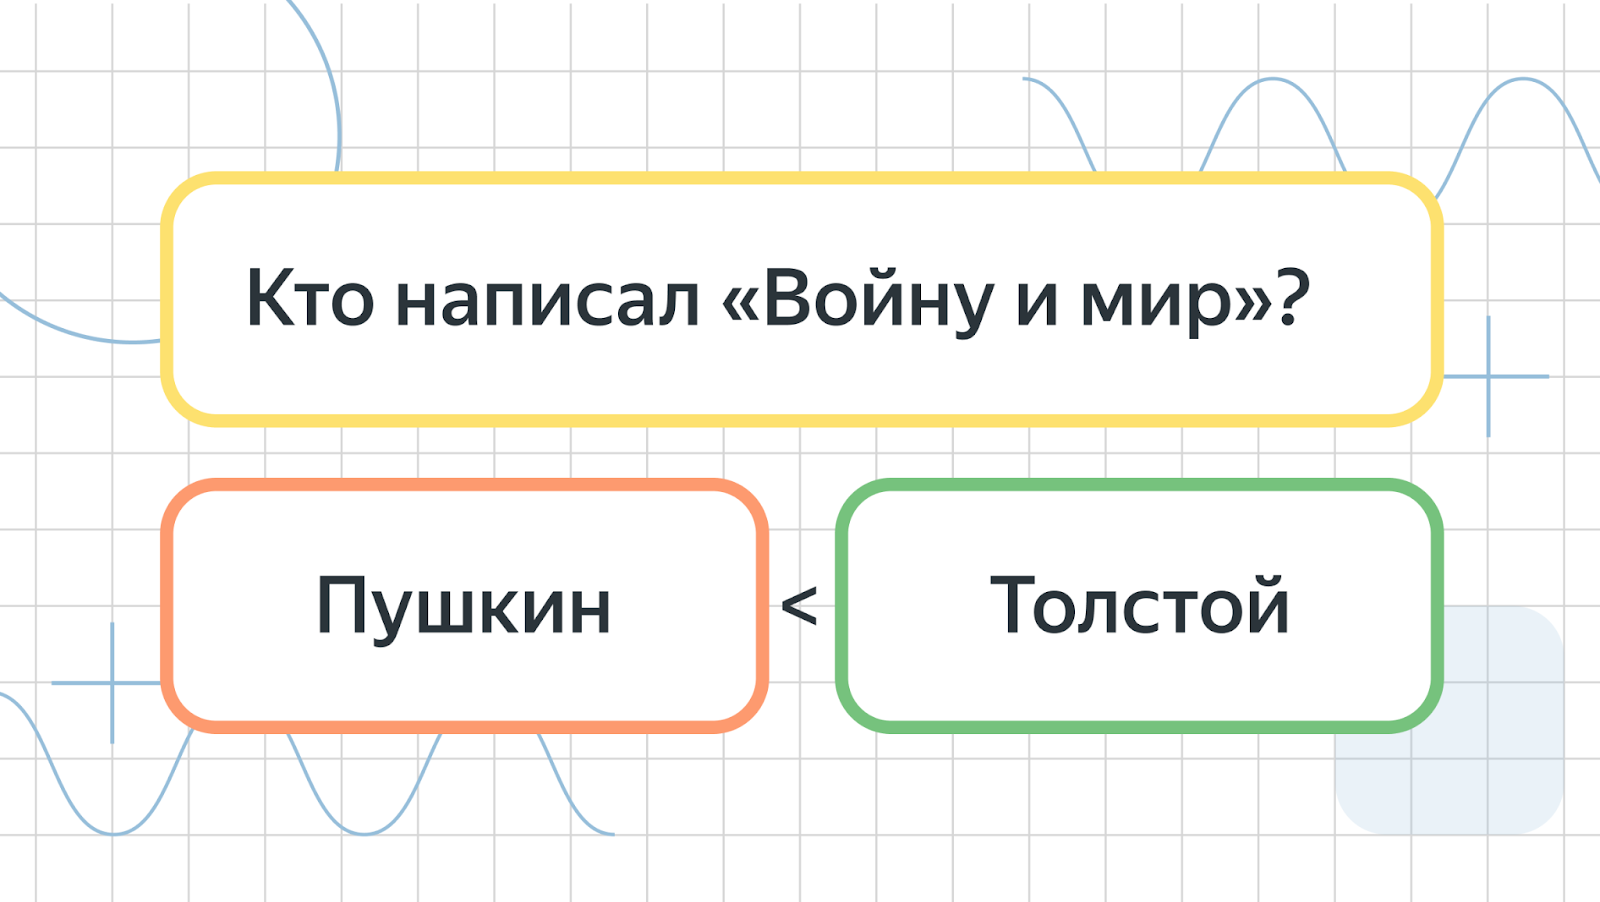 Как мы готовим RL для Alignment в больших языковых моделях: опыт команды YandexGPT - 8